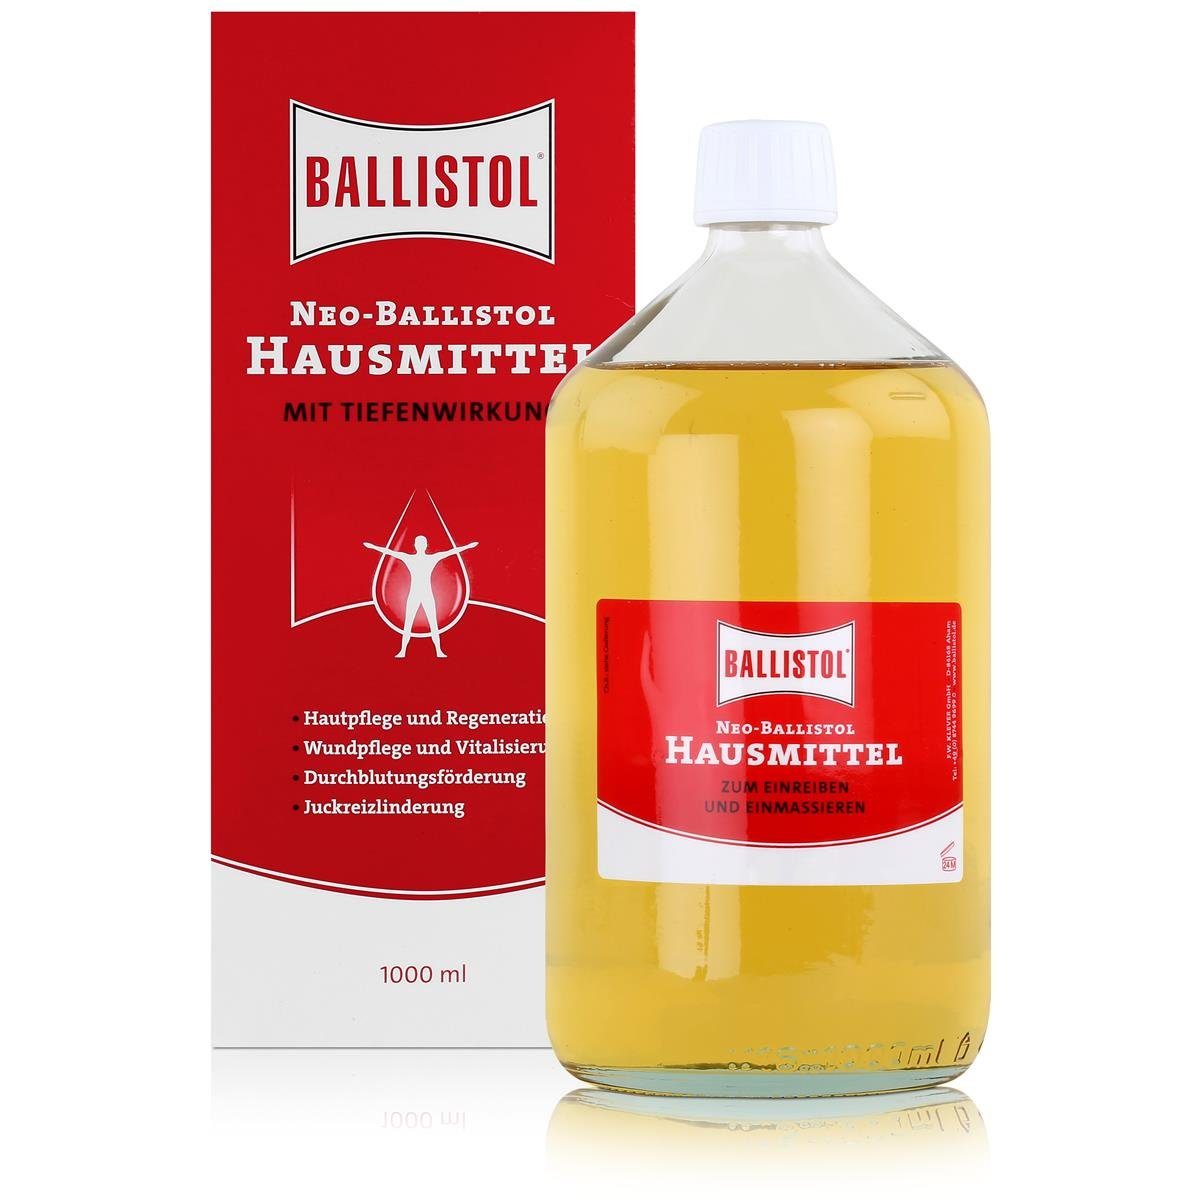 Ballistol Massageöl (3er mit Pack) Ballistol Neo-Hausmittel 1000ml Tiefenwirkung